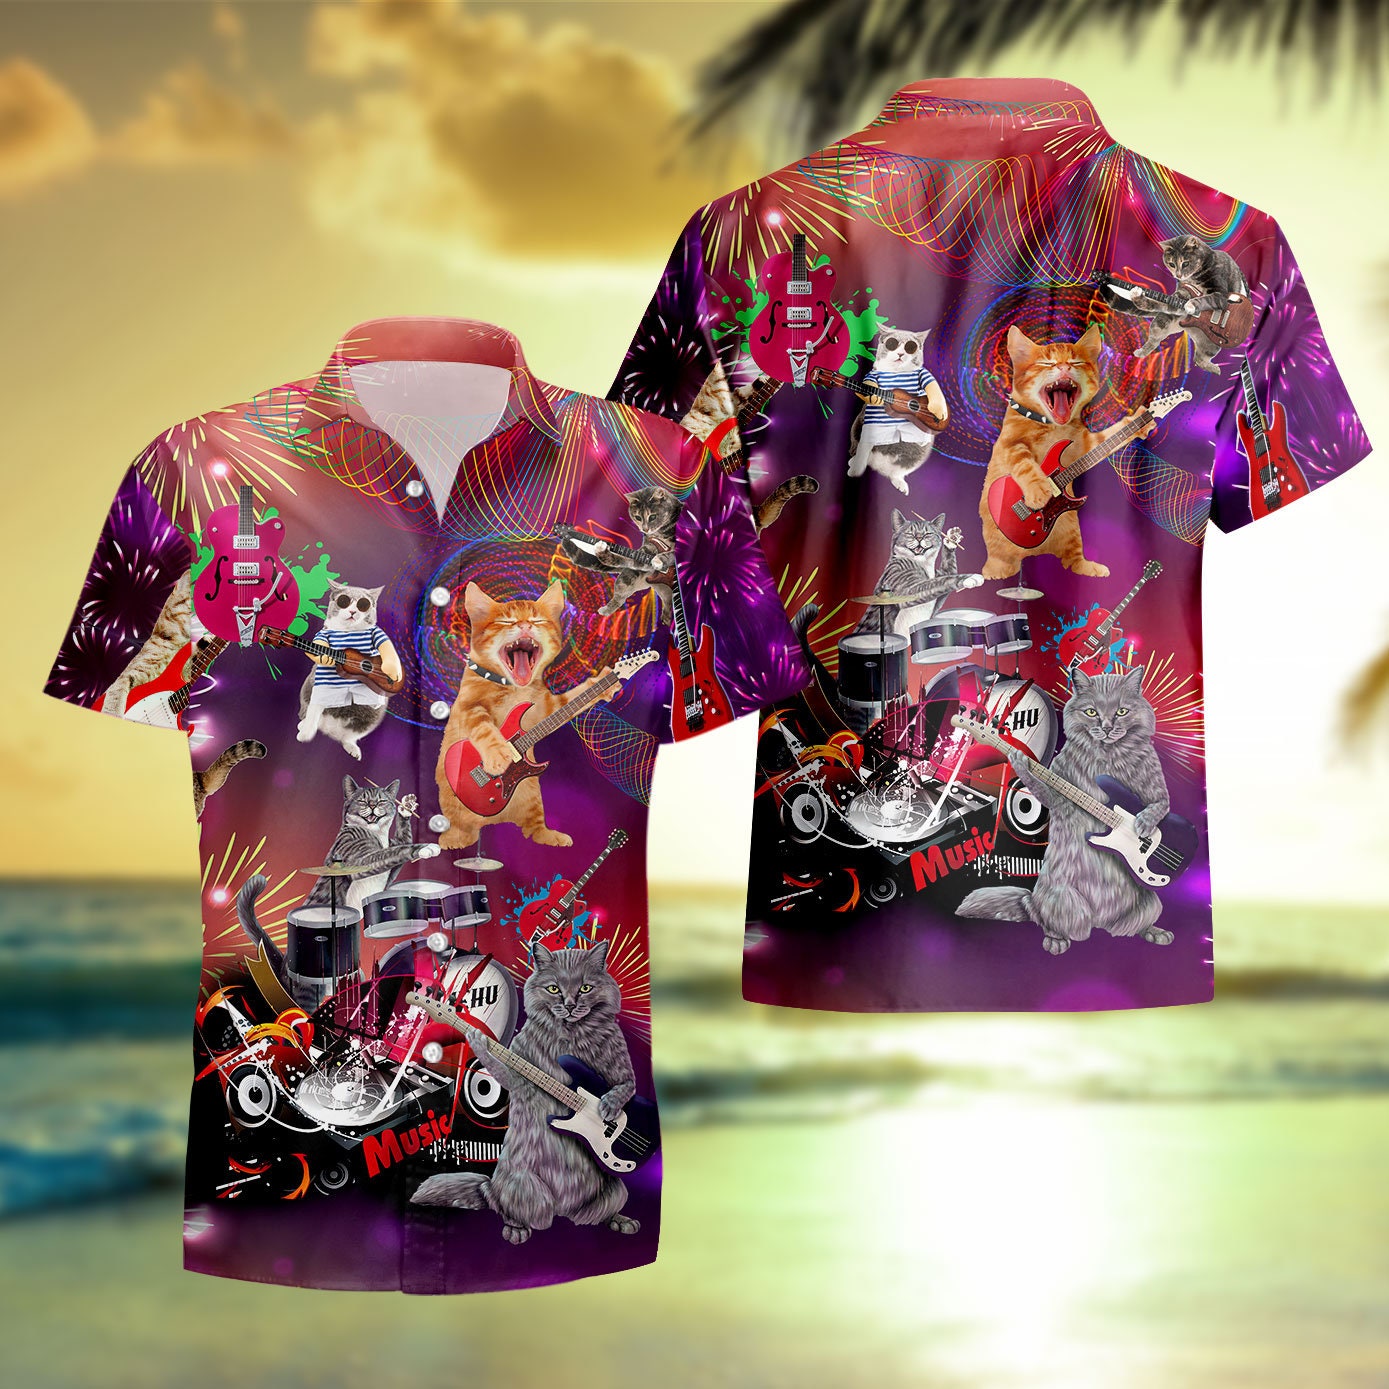 WYUTX Hawaiiian Christmas Vacation Shirt for Mens Qatar